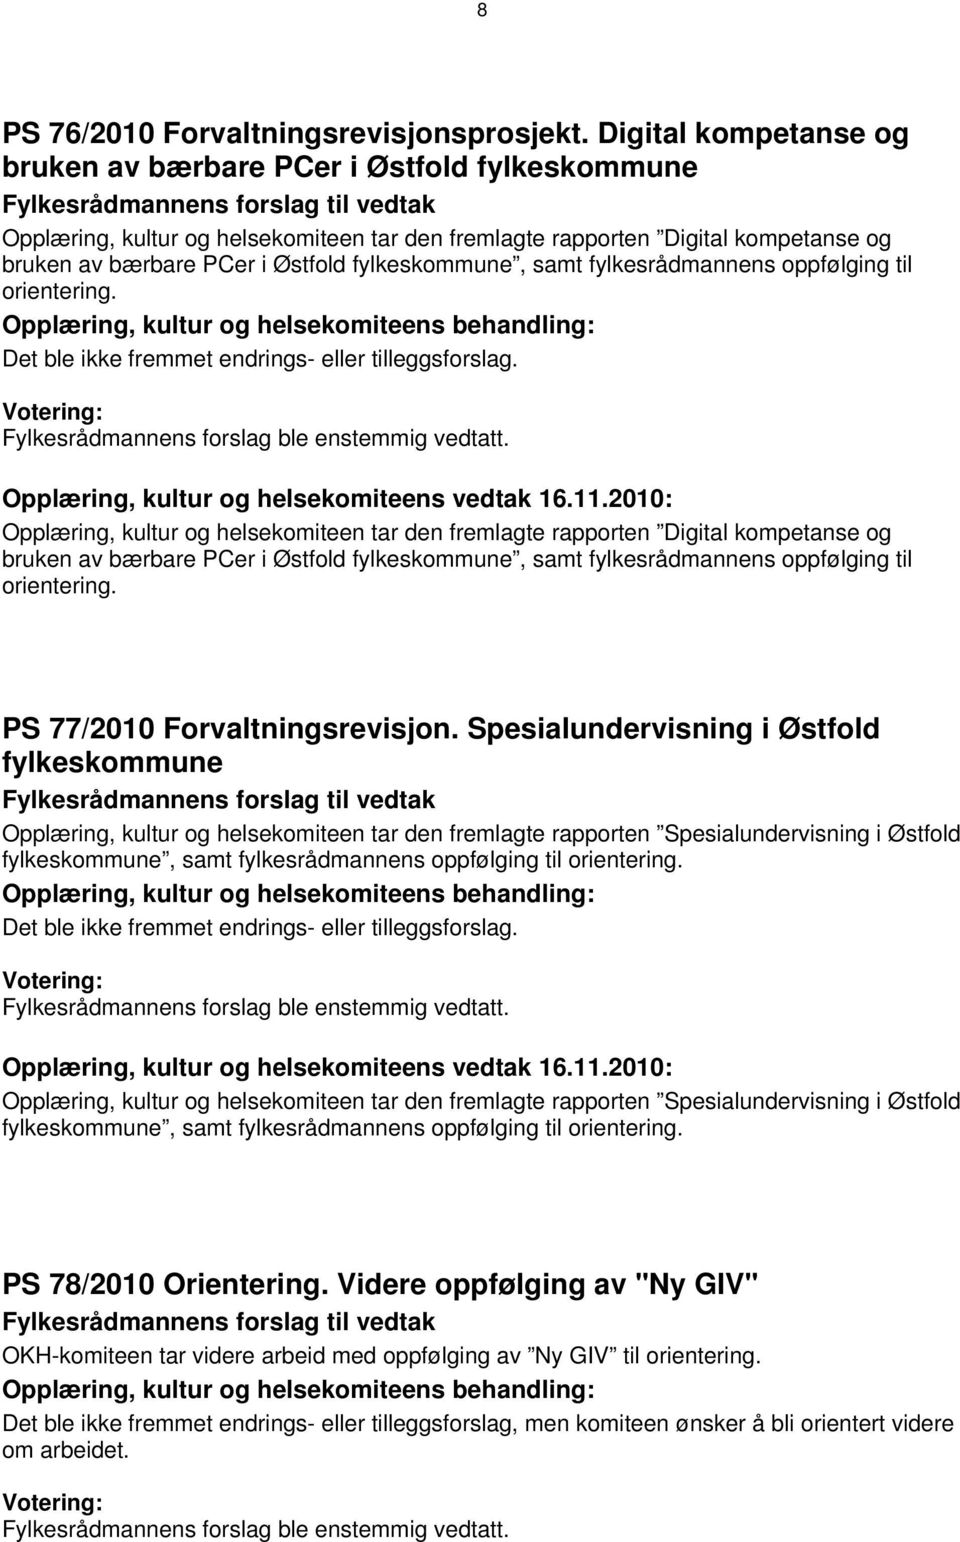 bærbare PCer i Østfold fylkeskommune, samt fylkesrådmannens oppfølging til Det ble ikke fremmet endrings- eller tilleggsforslag. Opplæring, kultur og helsekomiteens vedtak 16.11.